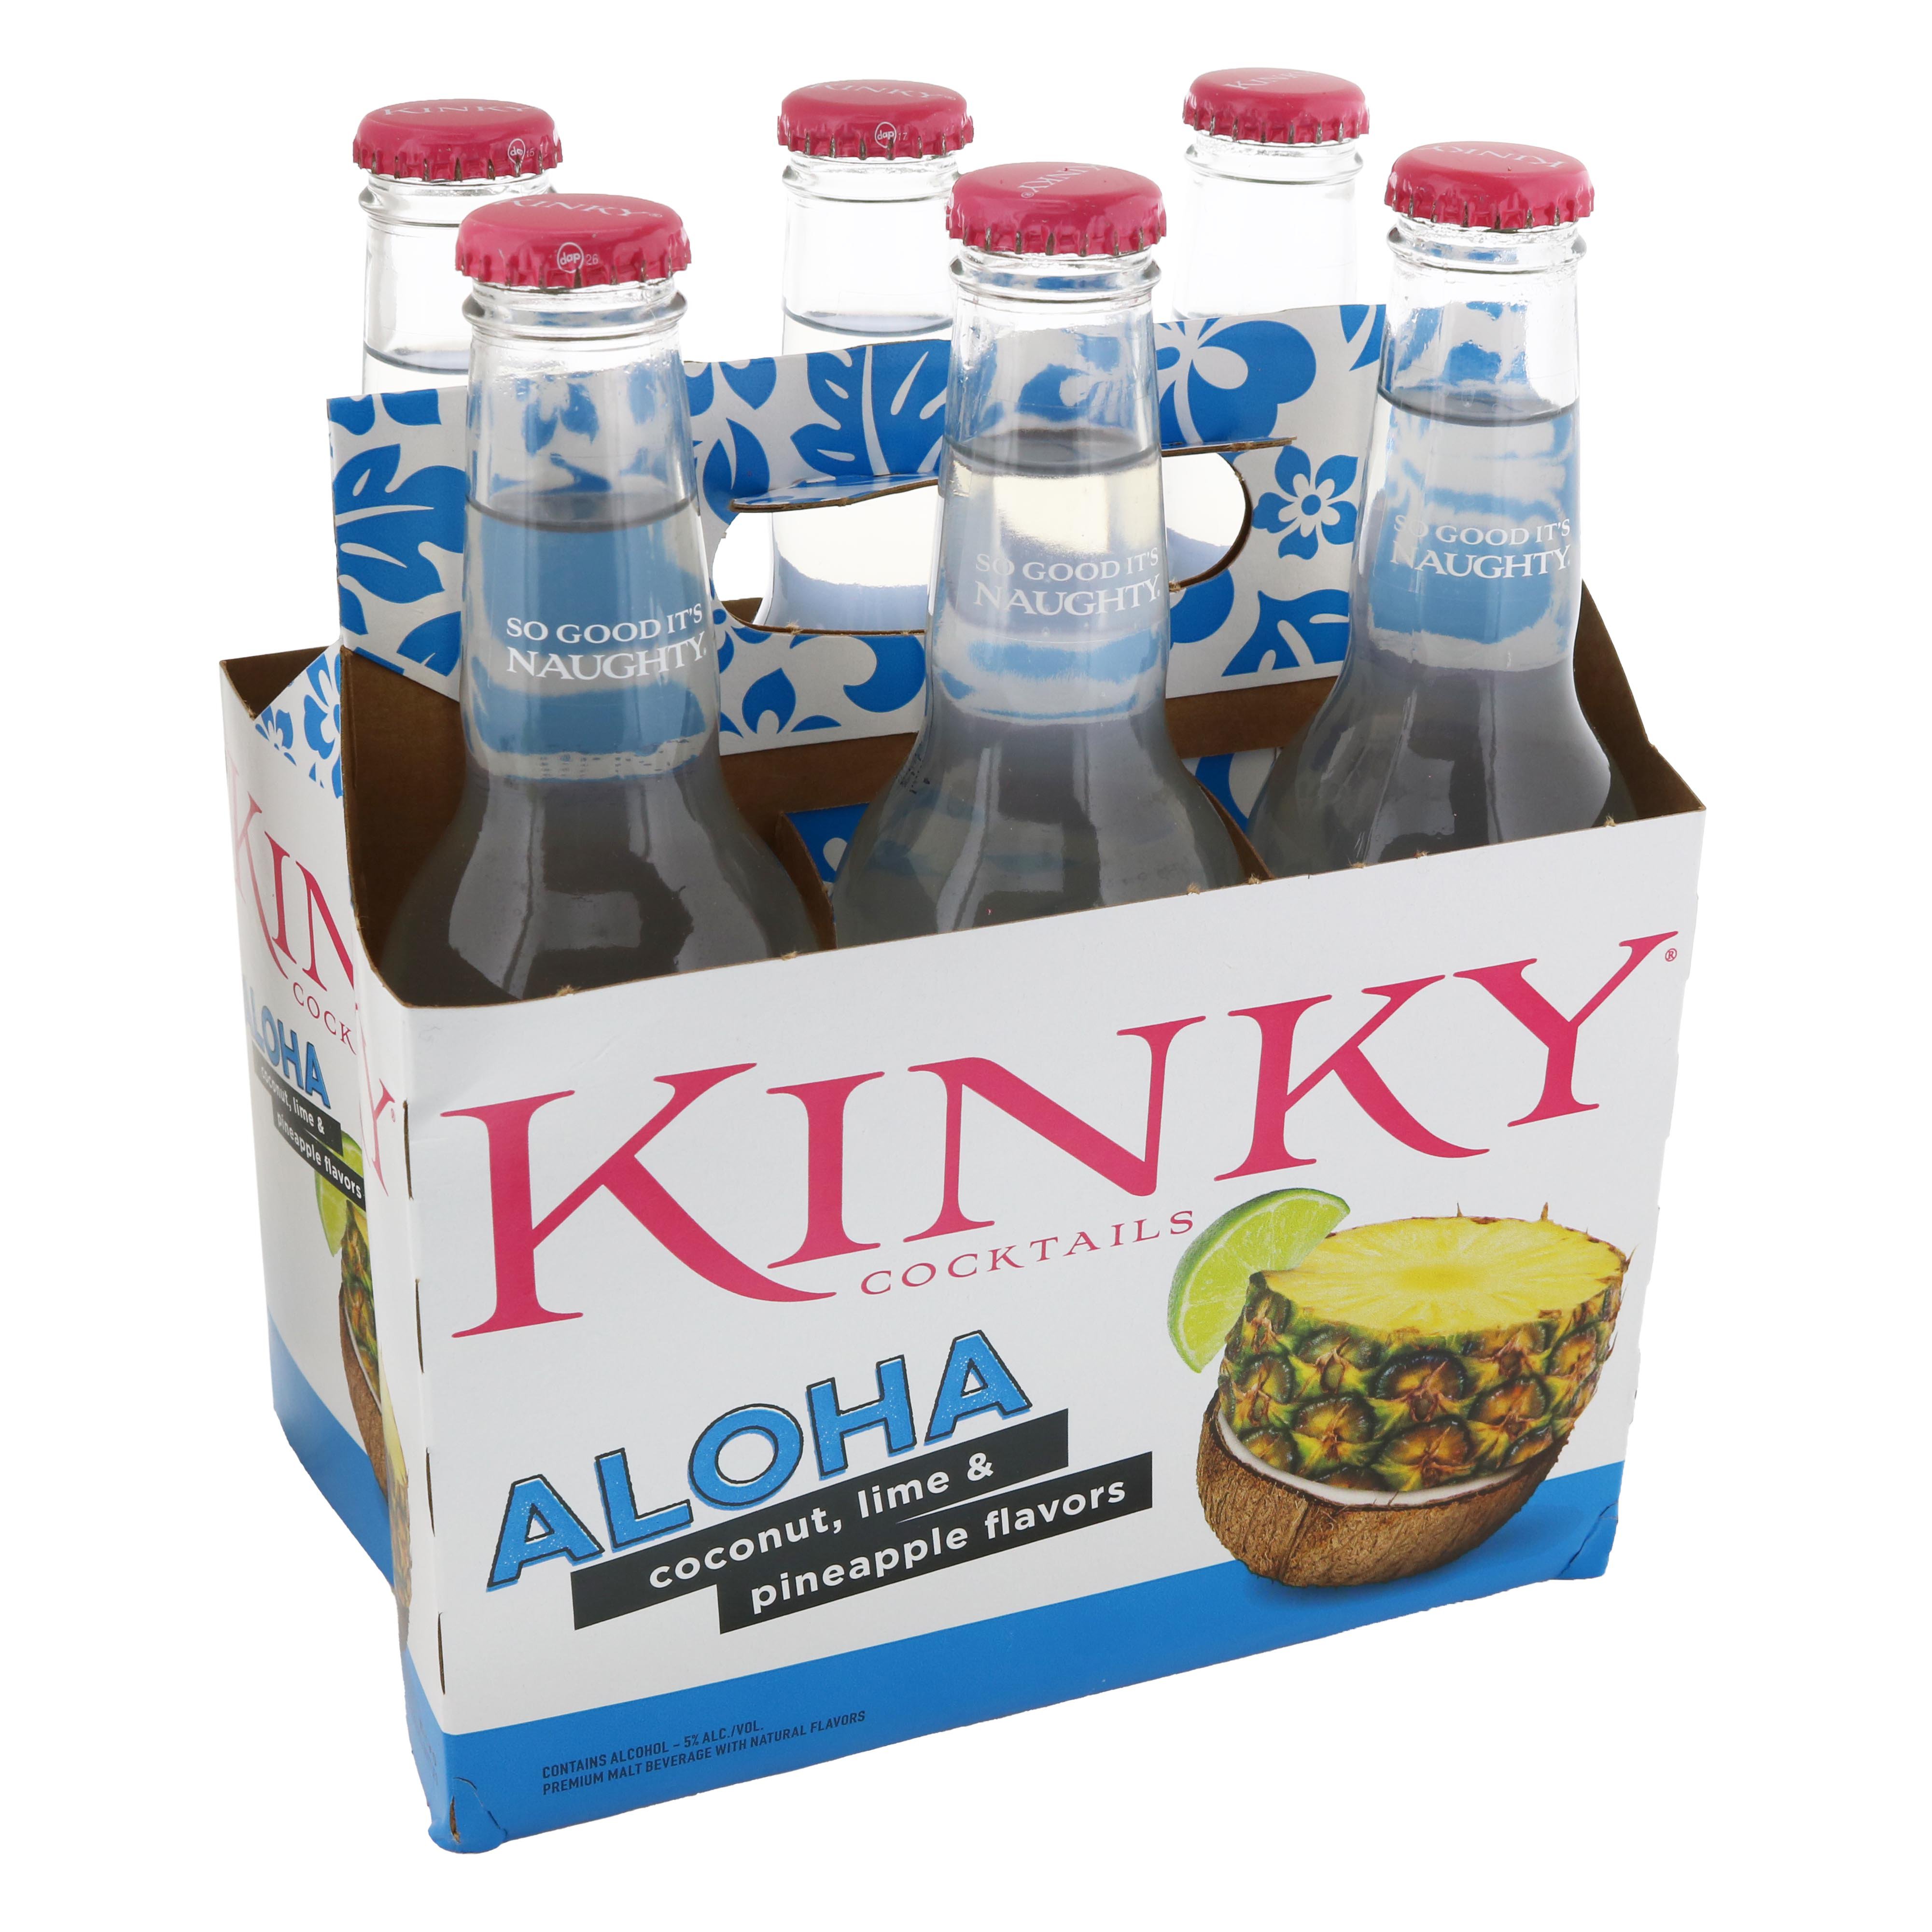 Kinky Cocktails Aloha Malt Beverage 11 2 Oz Bottles Shop Malt Beverages And Coolers At H E B